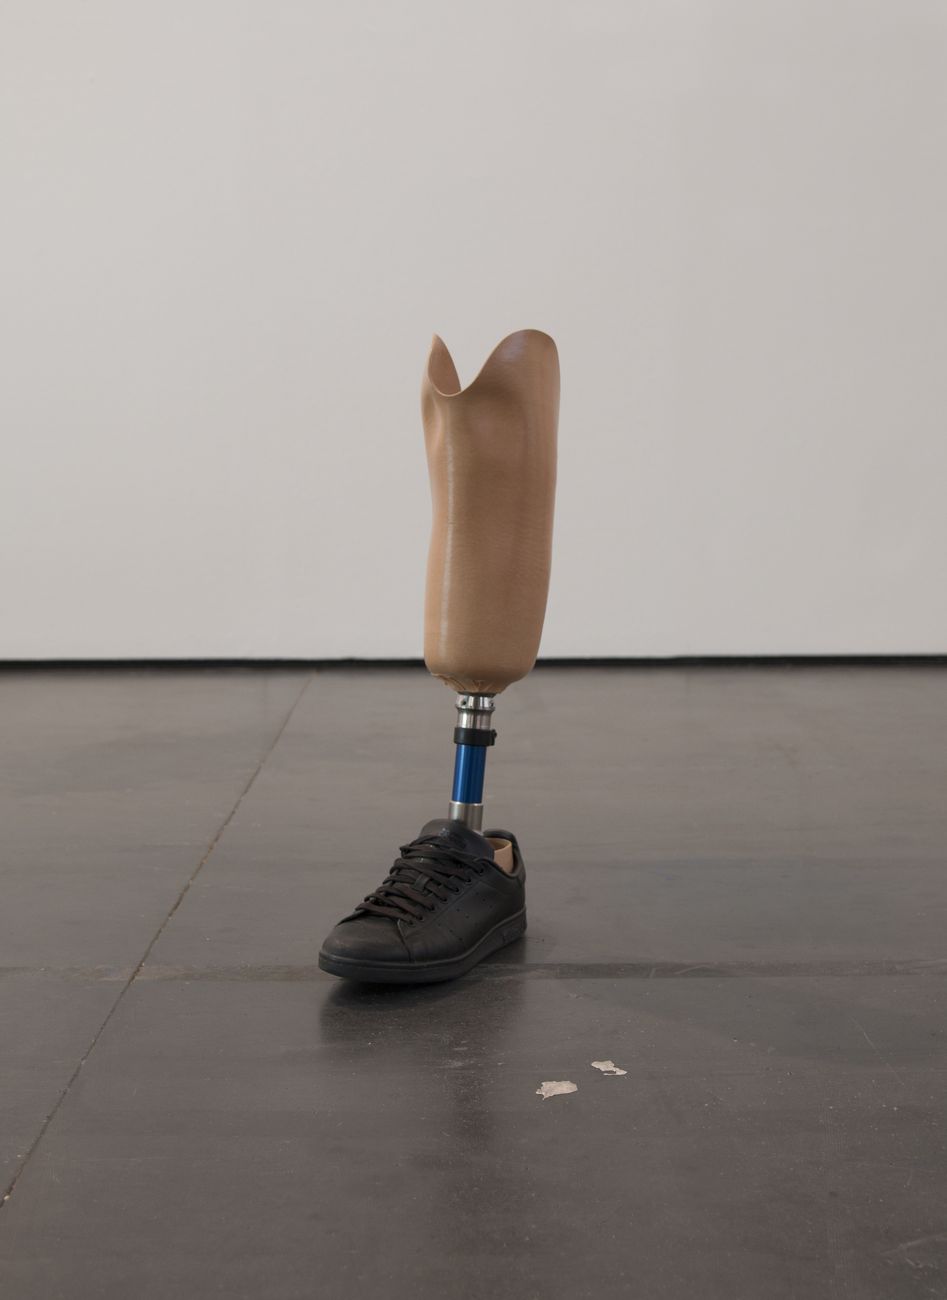 Antonio Della Guardia, do ut des, 2017, protesi, scarpa, acqua, 60 x 15 x 30 cm